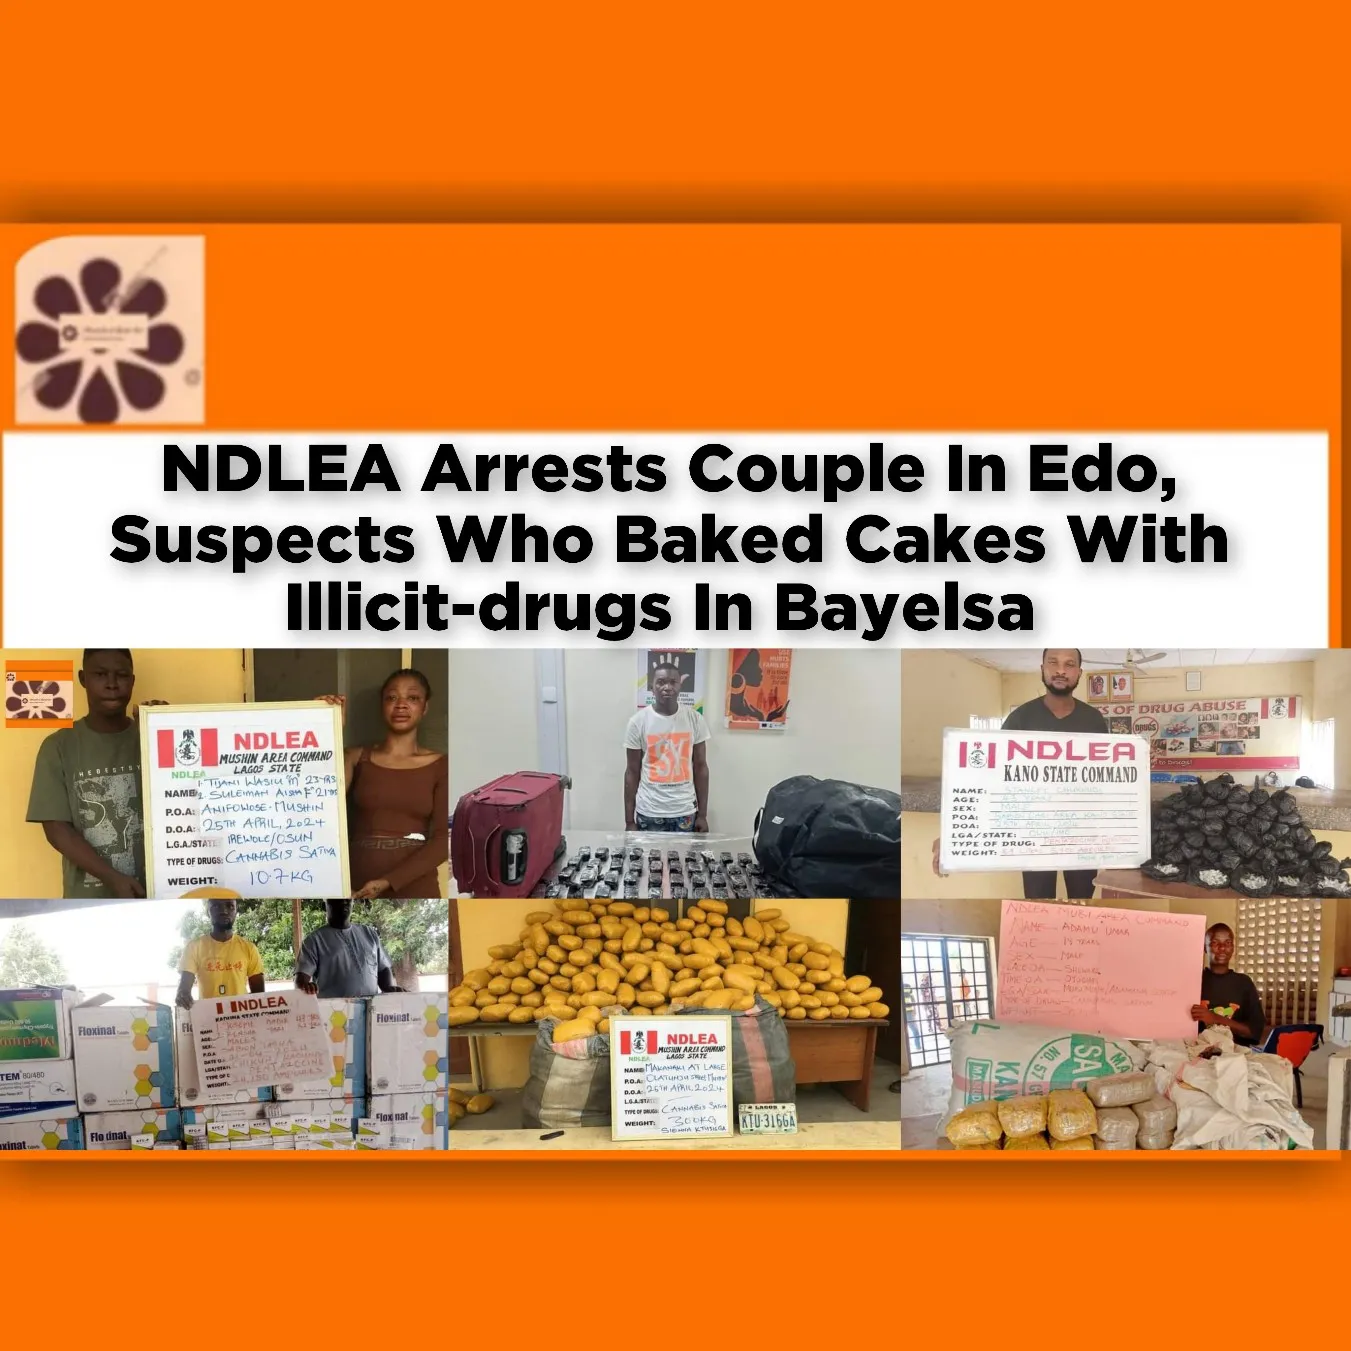 NDLEA Arrests Couple In Edo, Suspects Who Baked Cakes With Illicit-drugs In Bayelsa ~ OsazuwaAkonedo #Bayelsa #Cakes #cannabis #Iruekpen #NDLEA